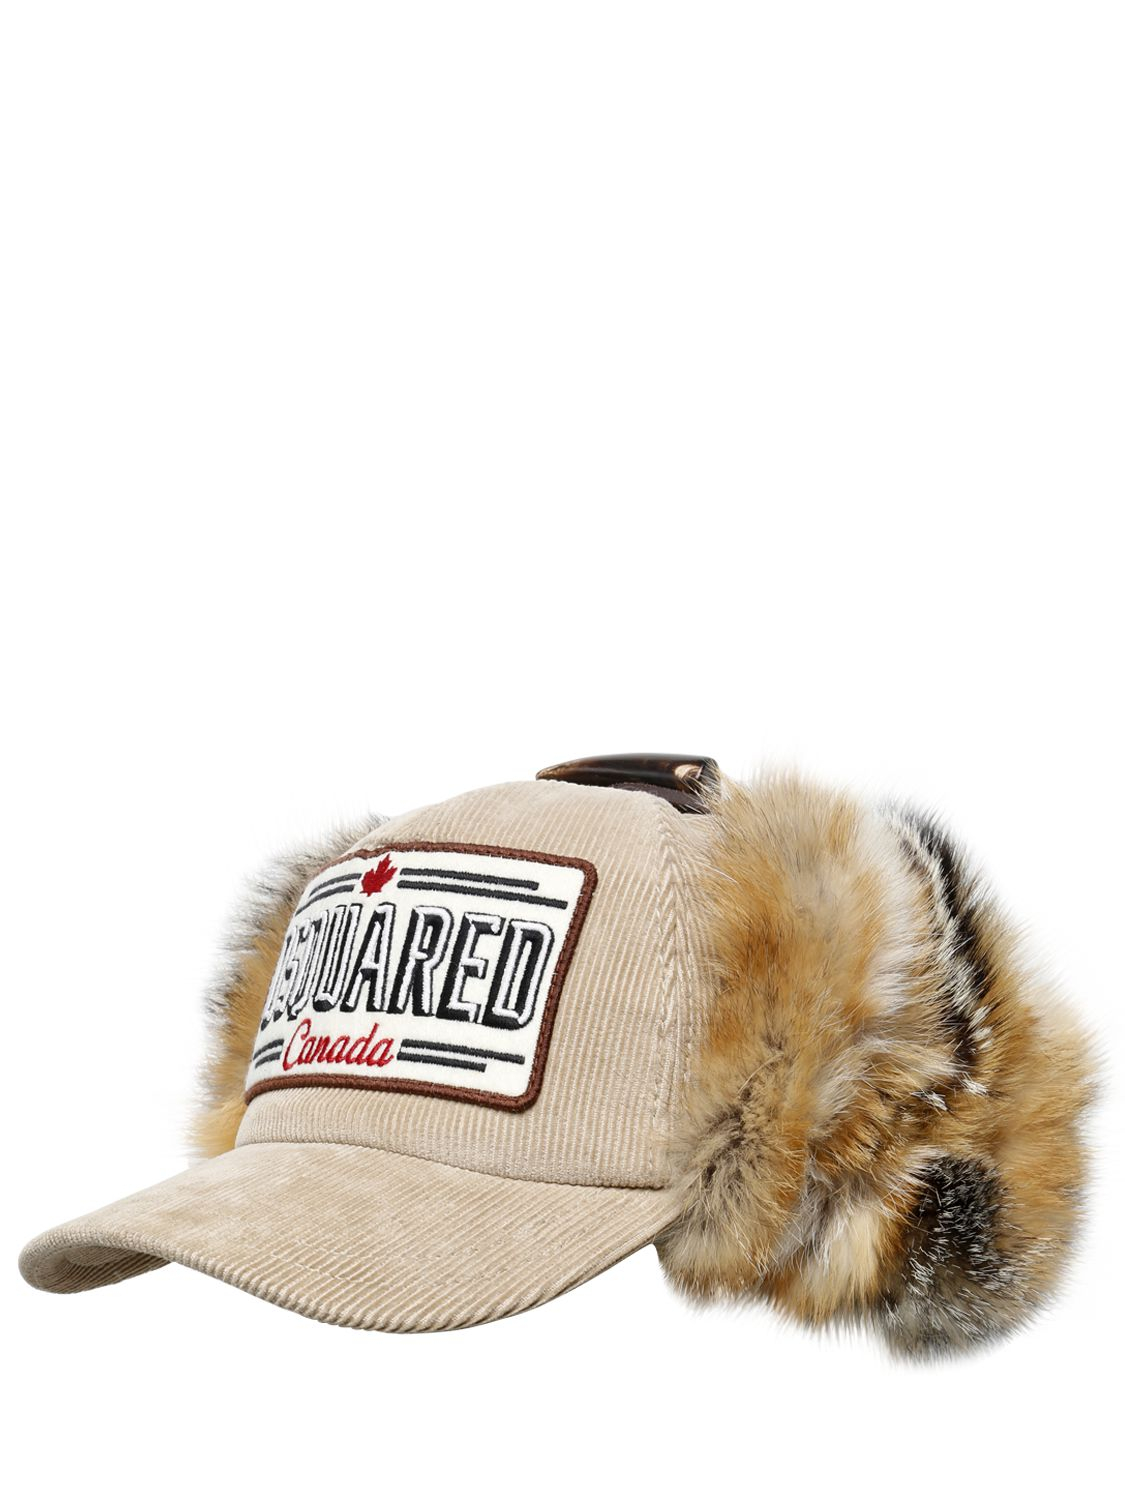 dsquared cap with fur - 63% remise - www.boretec.com.tr